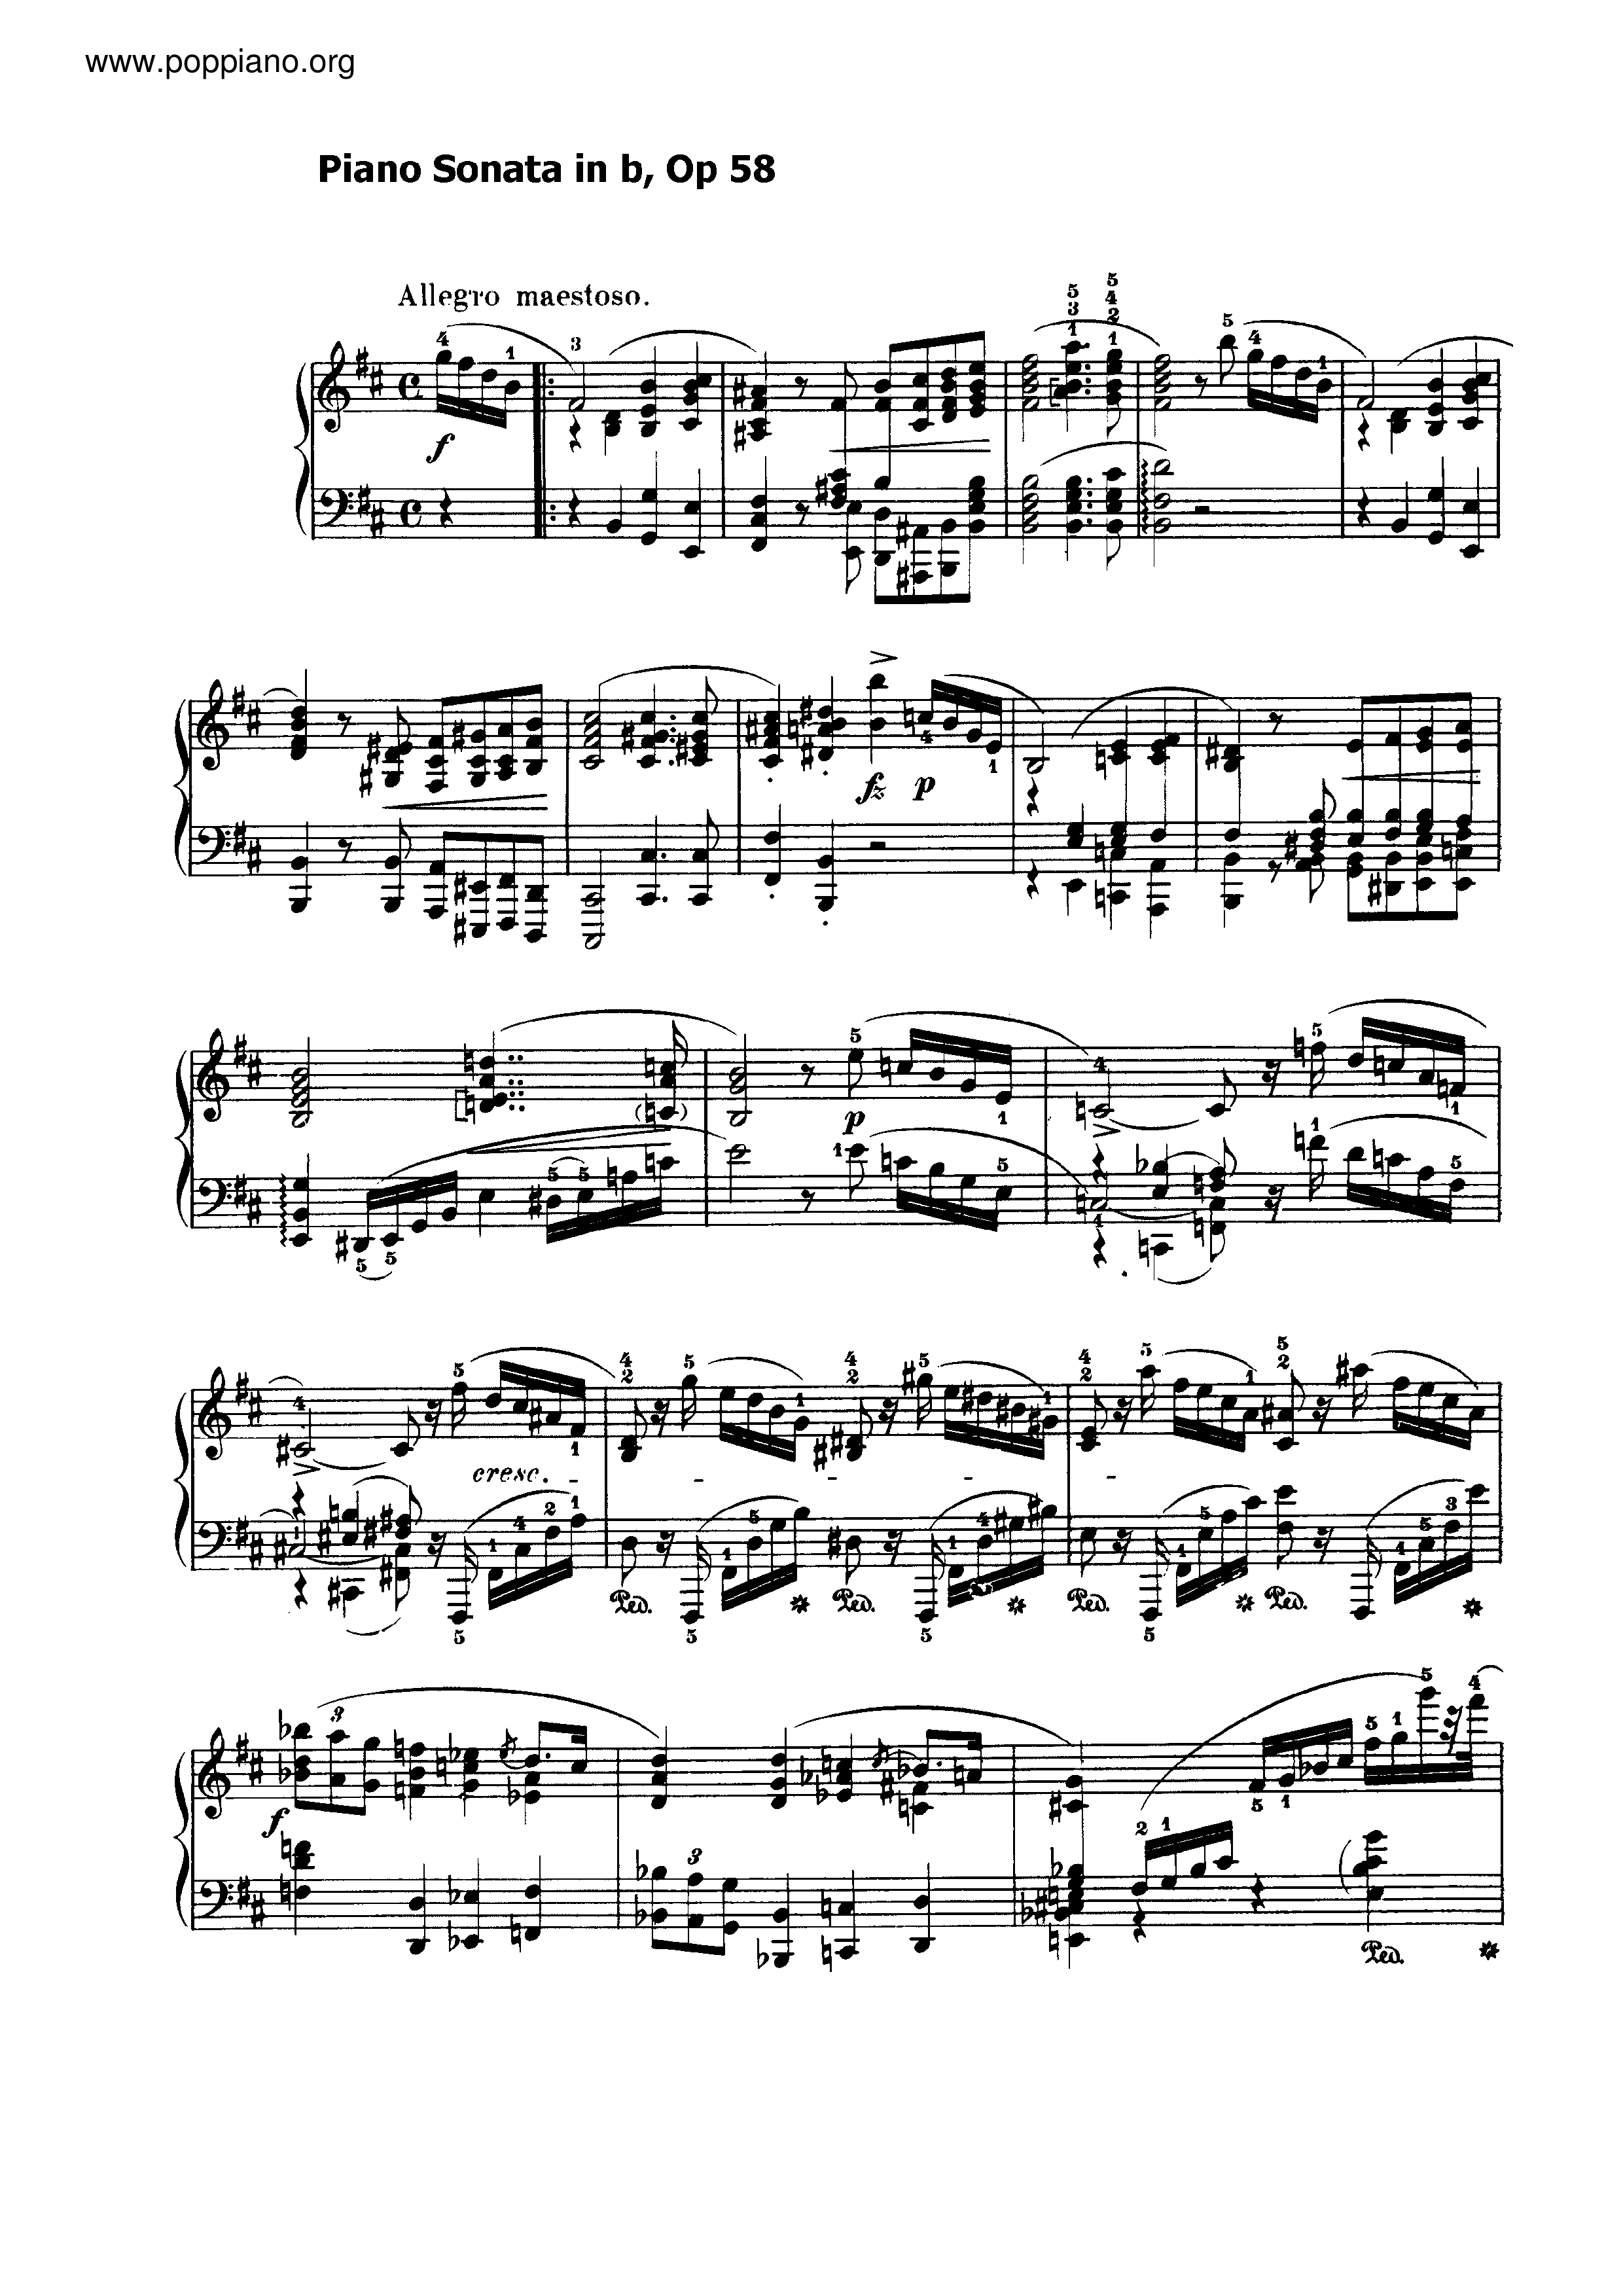 Sonata No. 3 in b minor, Op. 58 Score